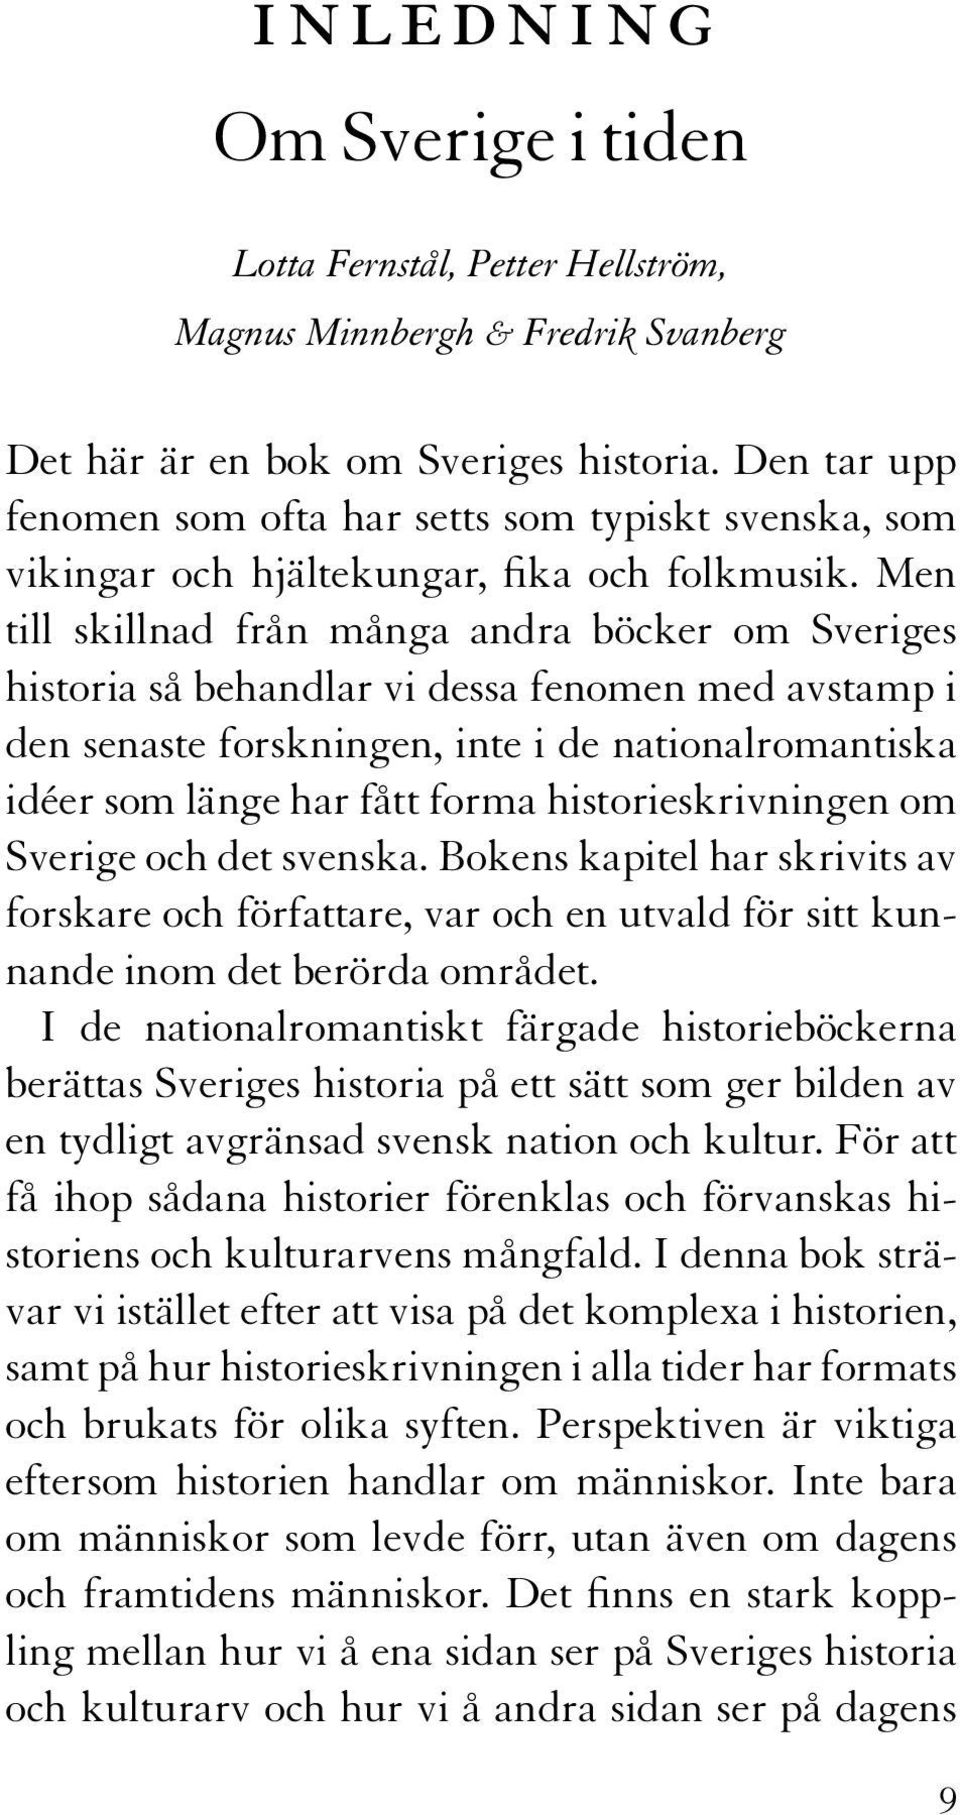 Men till skillnad från många andra böcker om Sveriges historia så behandlar vi dessa fenomen med avstamp i den senaste forskningen, inte i de nationalromantiska idéer som länge har fått forma